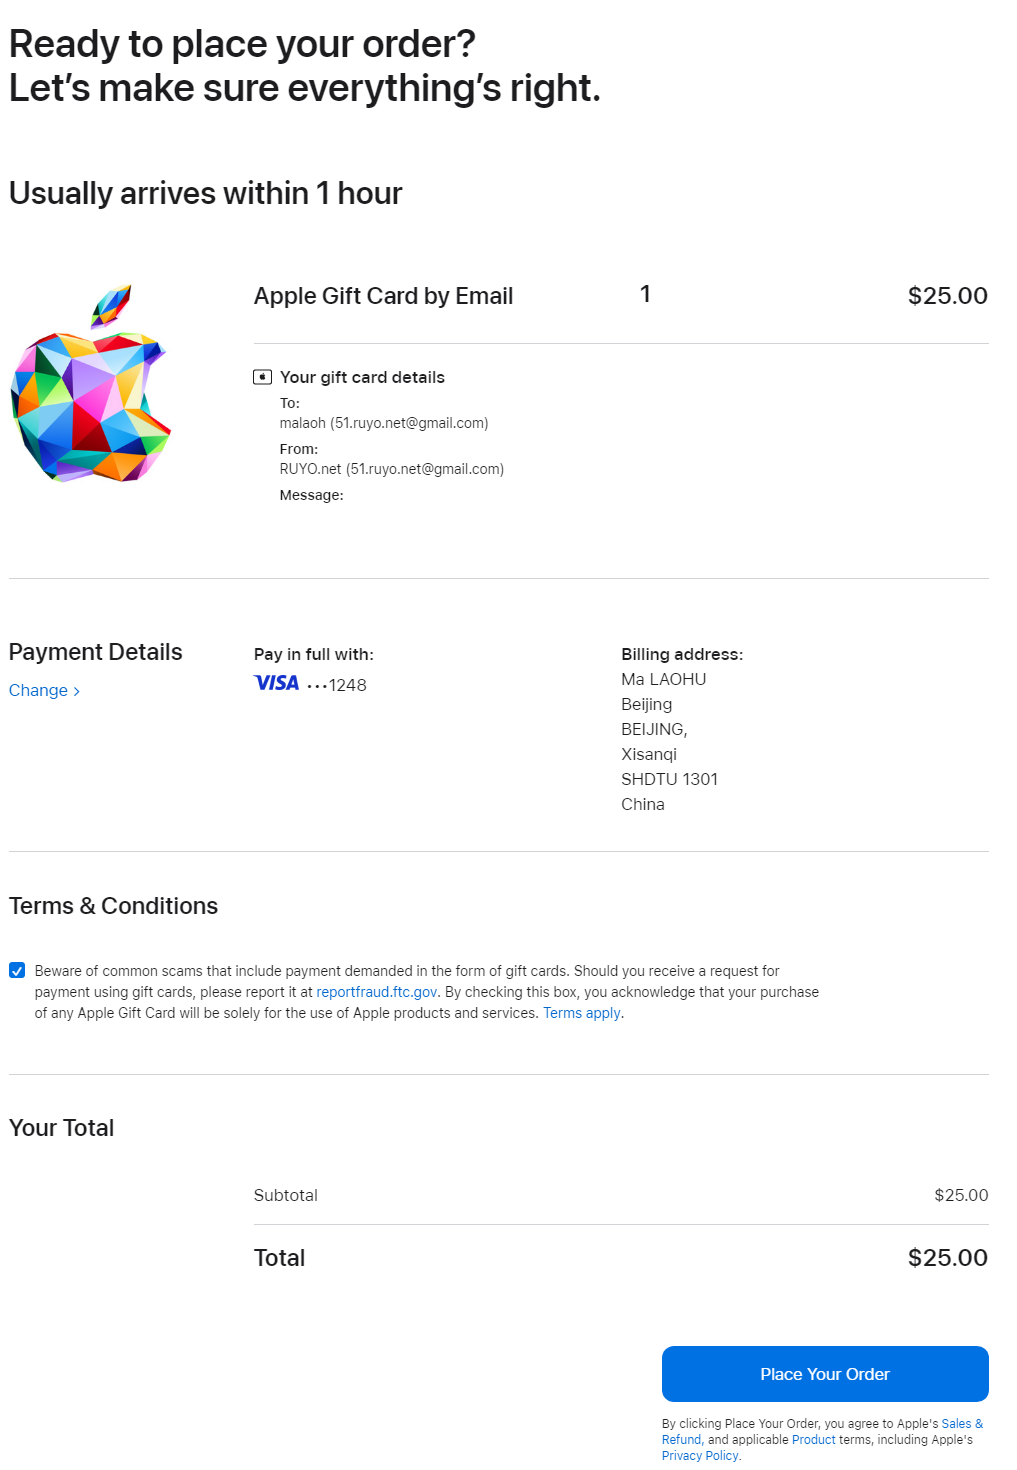 自己动手注册美区Apple ID账号，以及礼品卡购买